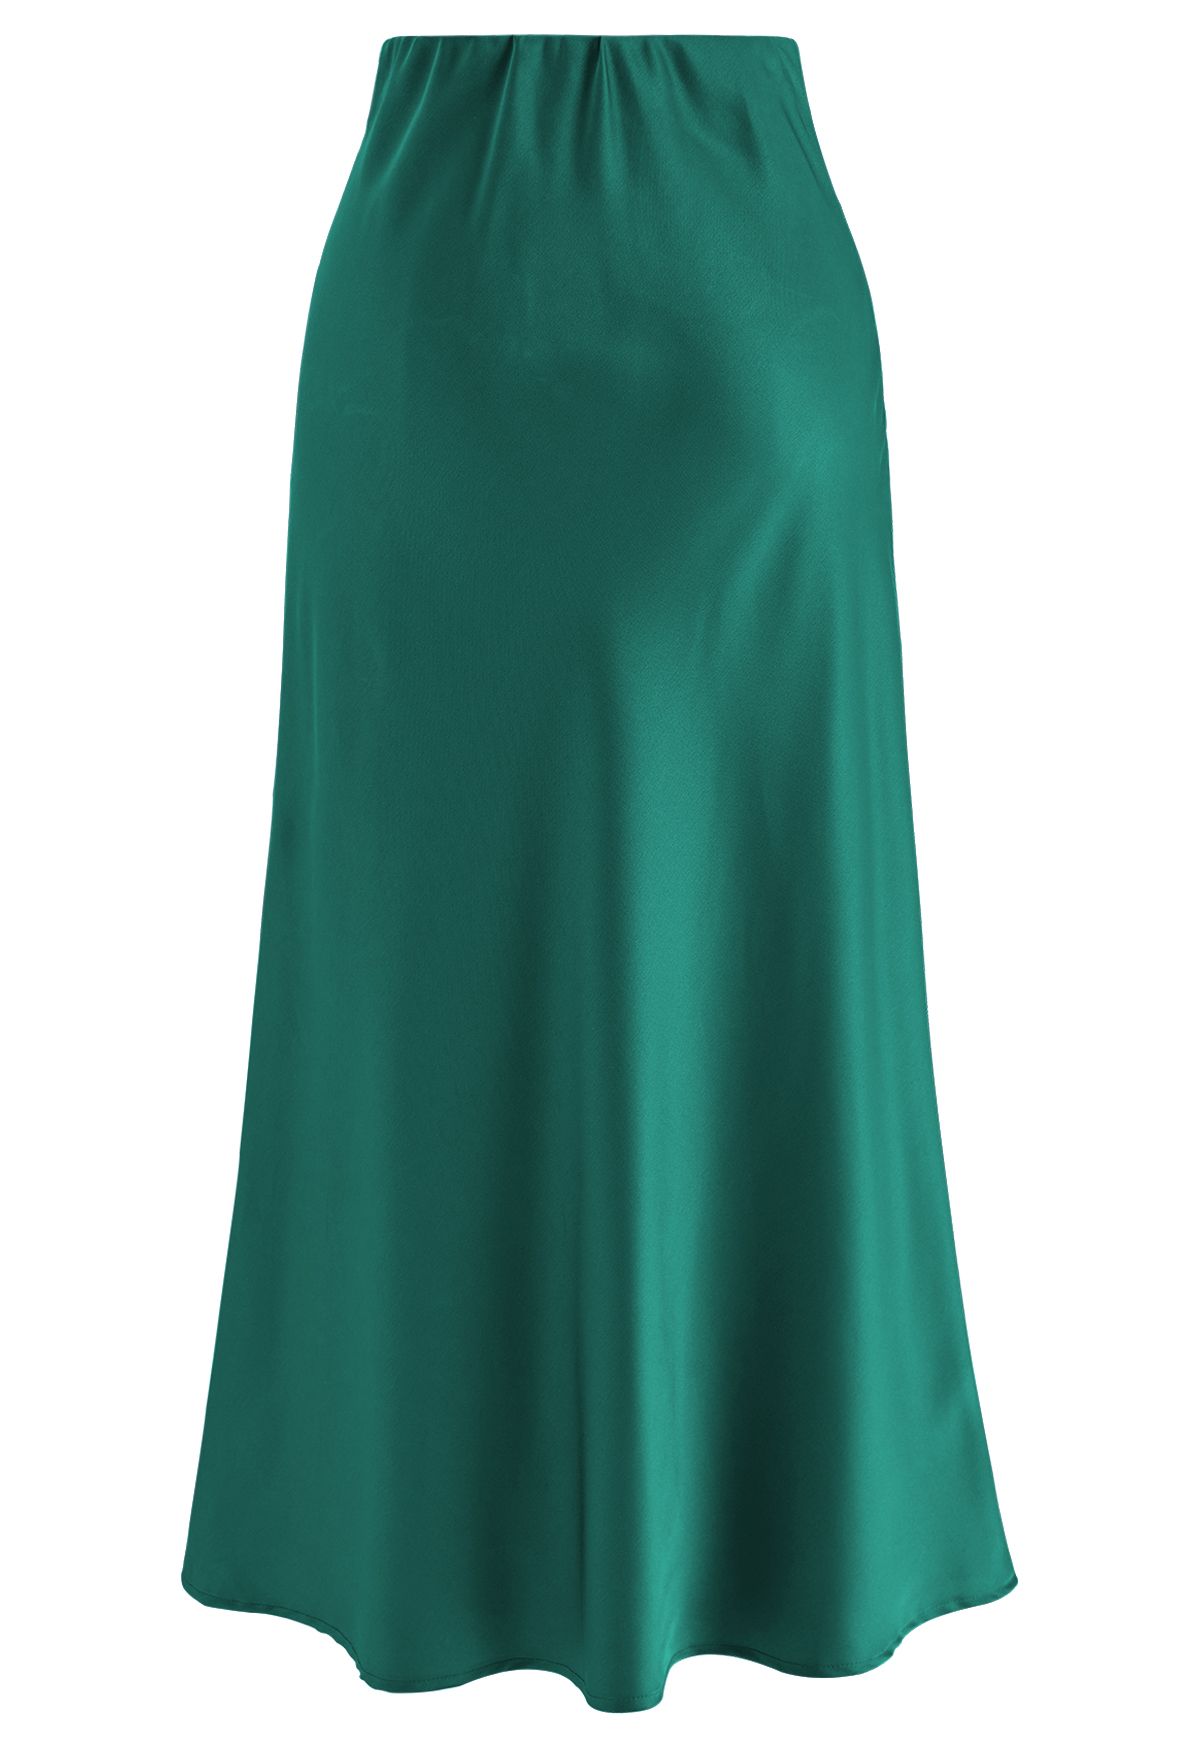 Satin Finish Bias Cut Midi Skirt in Emerald